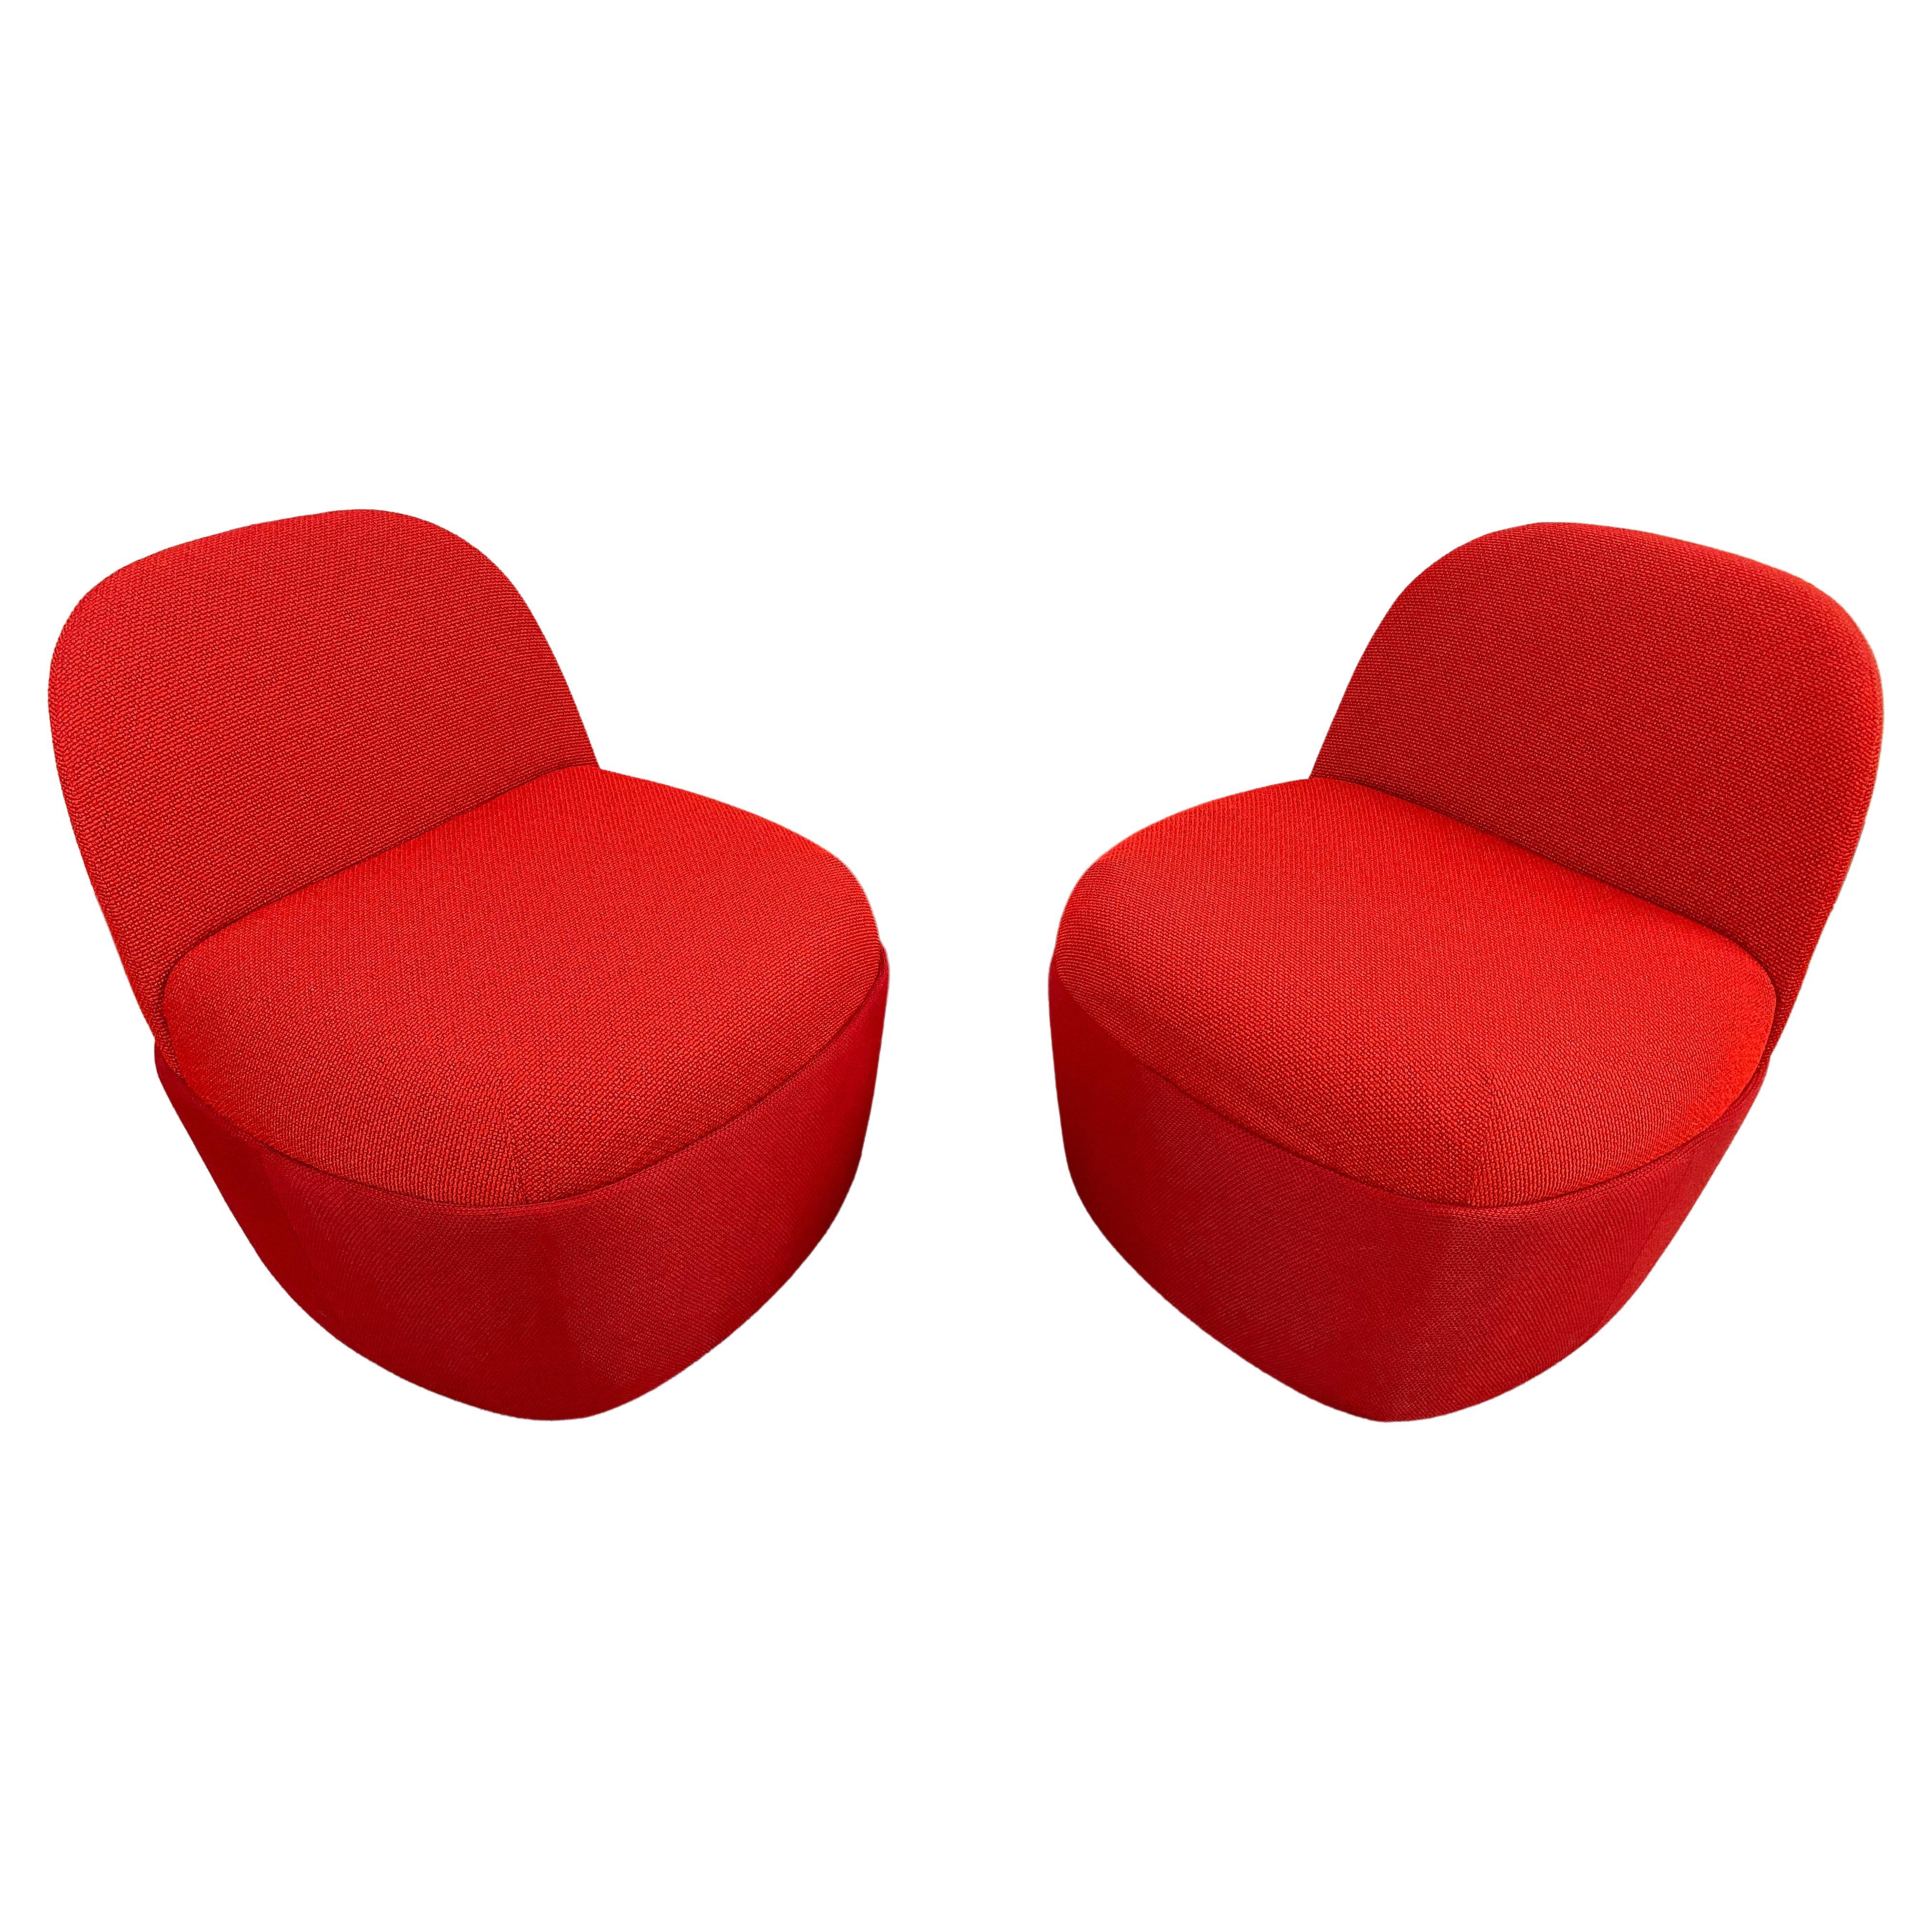 Une paire moderne et fantaisiste de chaises ou de poufs personnalisés Studio TK Chest Collection avec dossier dans une belle couleur rouge. Les deux chaises sont fabriquées en tricot de haute qualité et sont très confortables et bien faites.